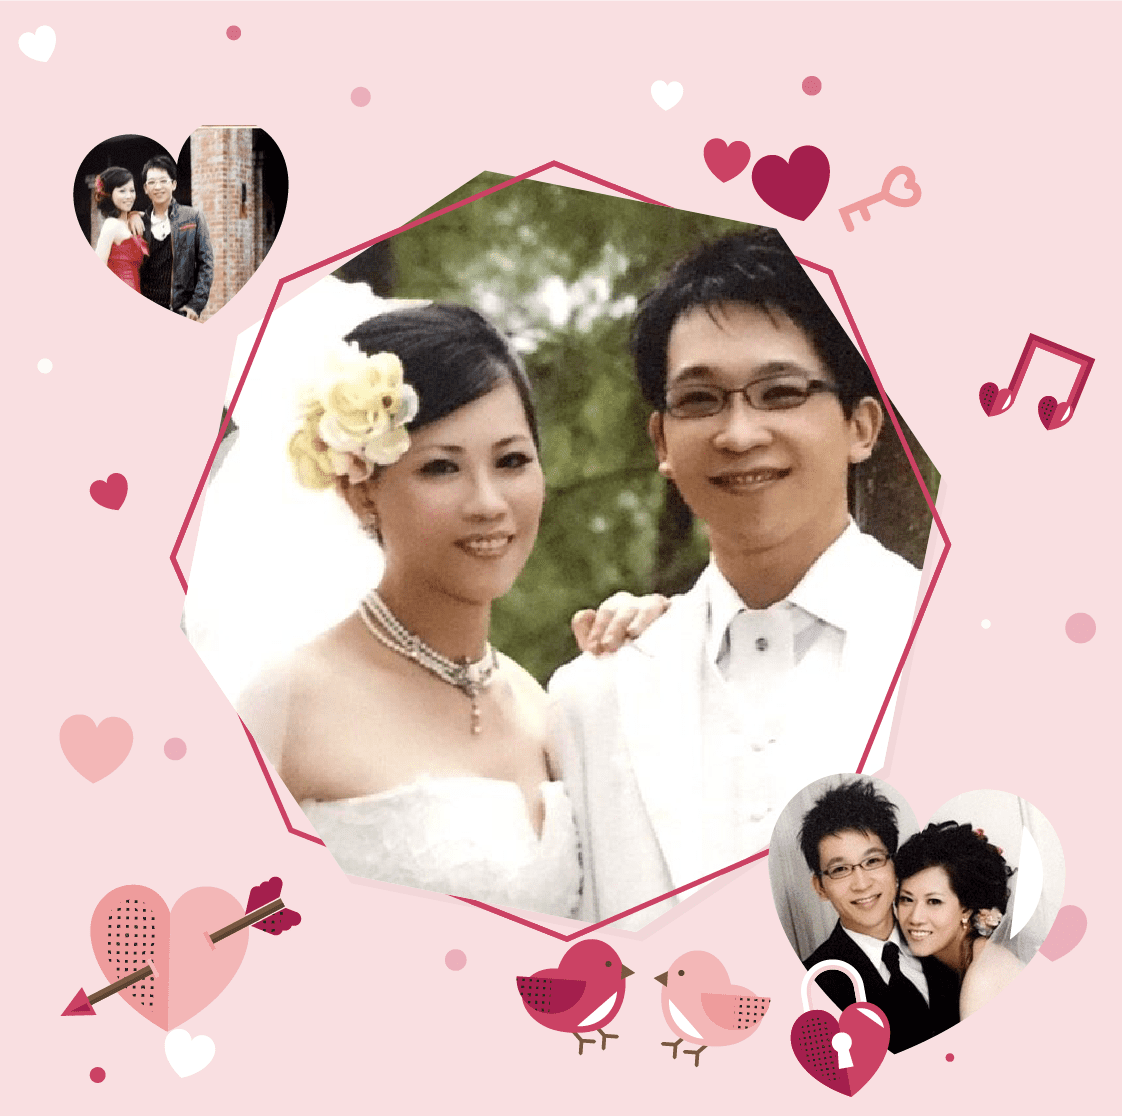 恭喜會員李先生與會員林小姐 結婚了